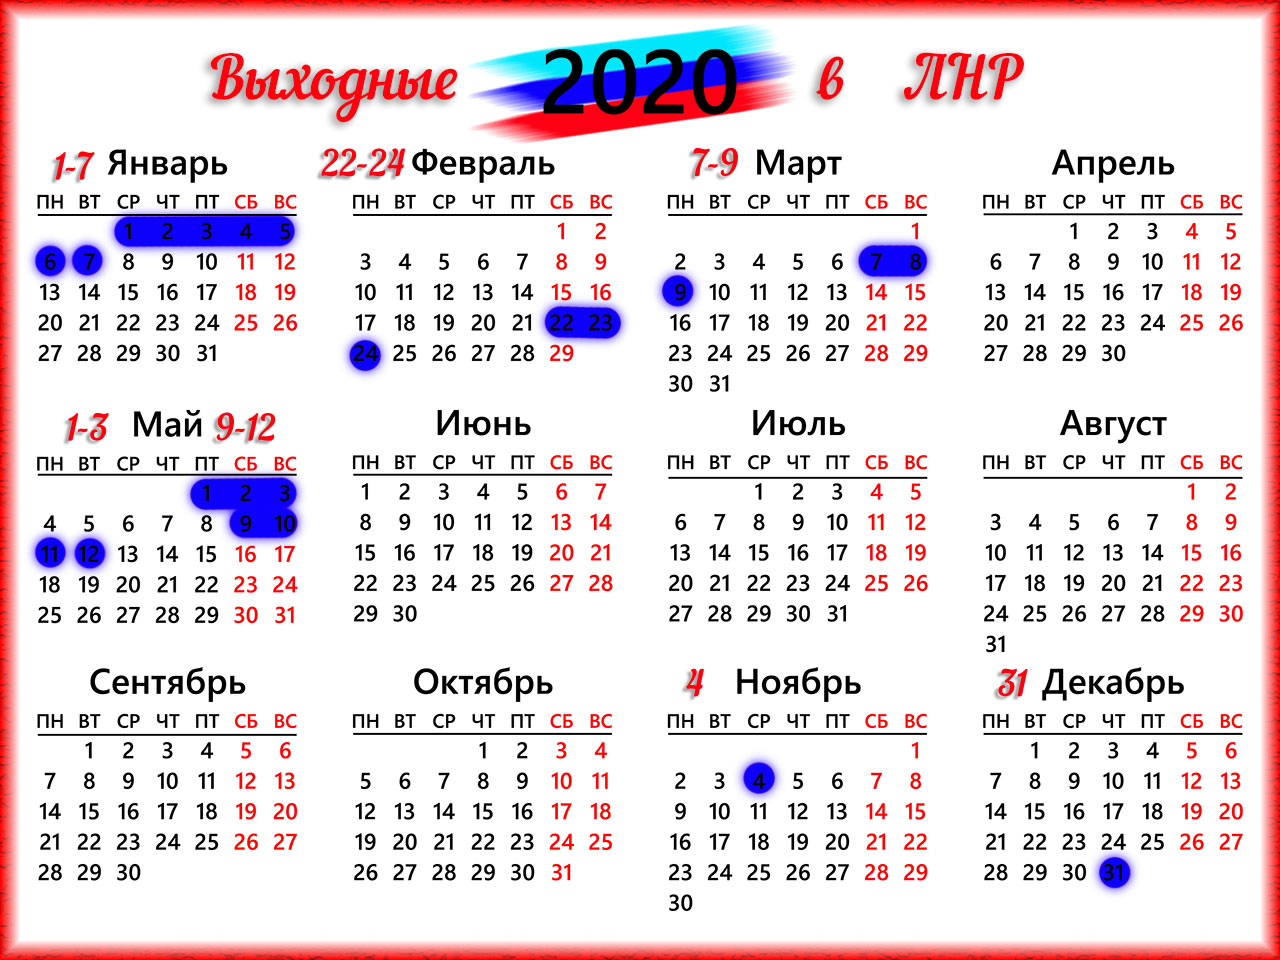 Производственный календарь 2020 года с праздниками. Календарь. Календарь на 2020 год. Календарь с праздничными днями. Календарь выходных дней 2020.